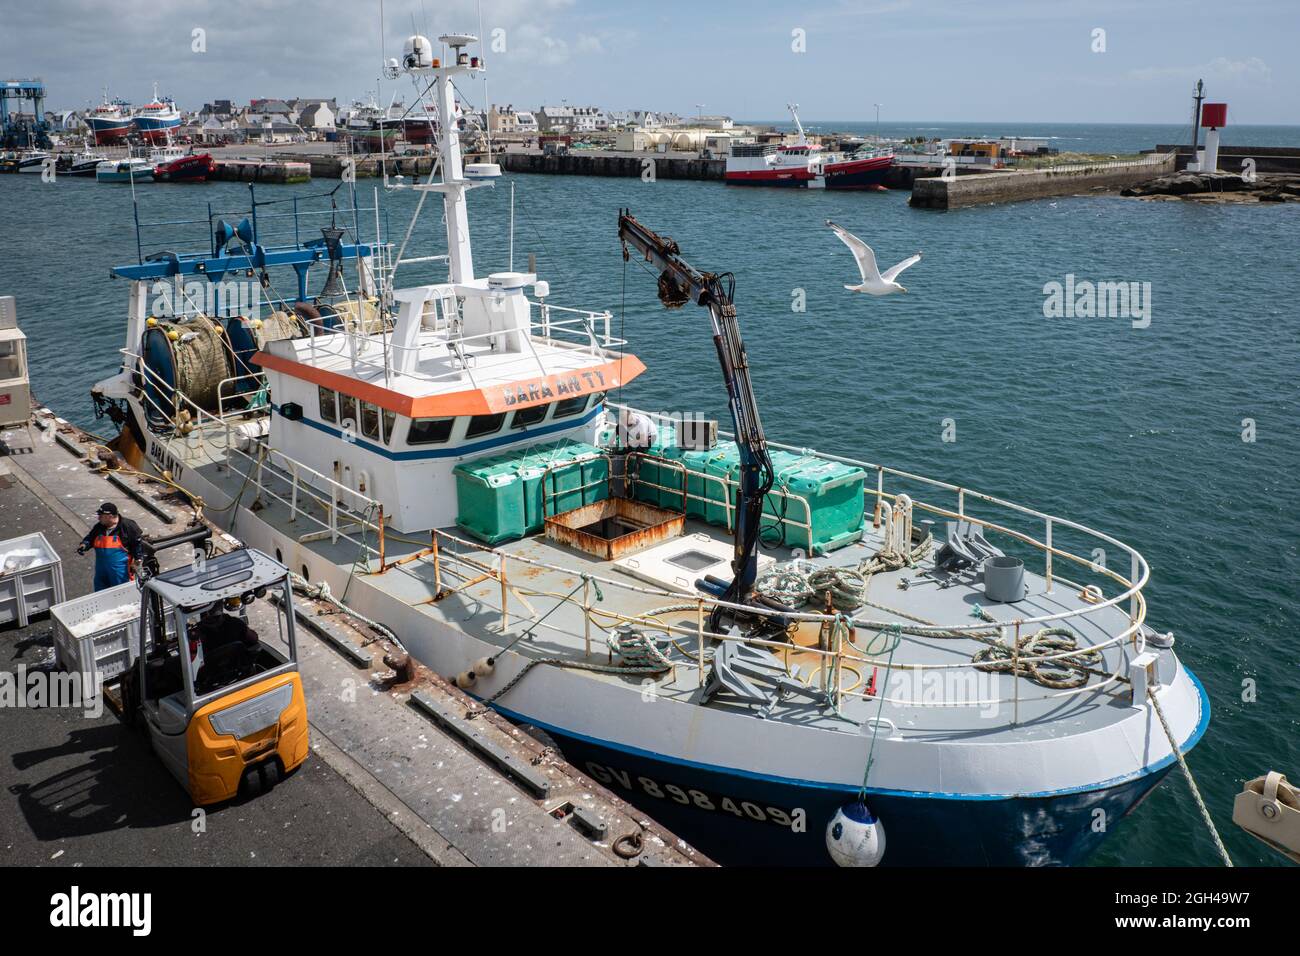 Le Guilvinec (Francia), 07 de agosto de 2021. Un barco de pesca que acaba  de llegar al puerto y los pescadores descargando cajas de pescado. Con una  gaviota volando encima Fotografía de